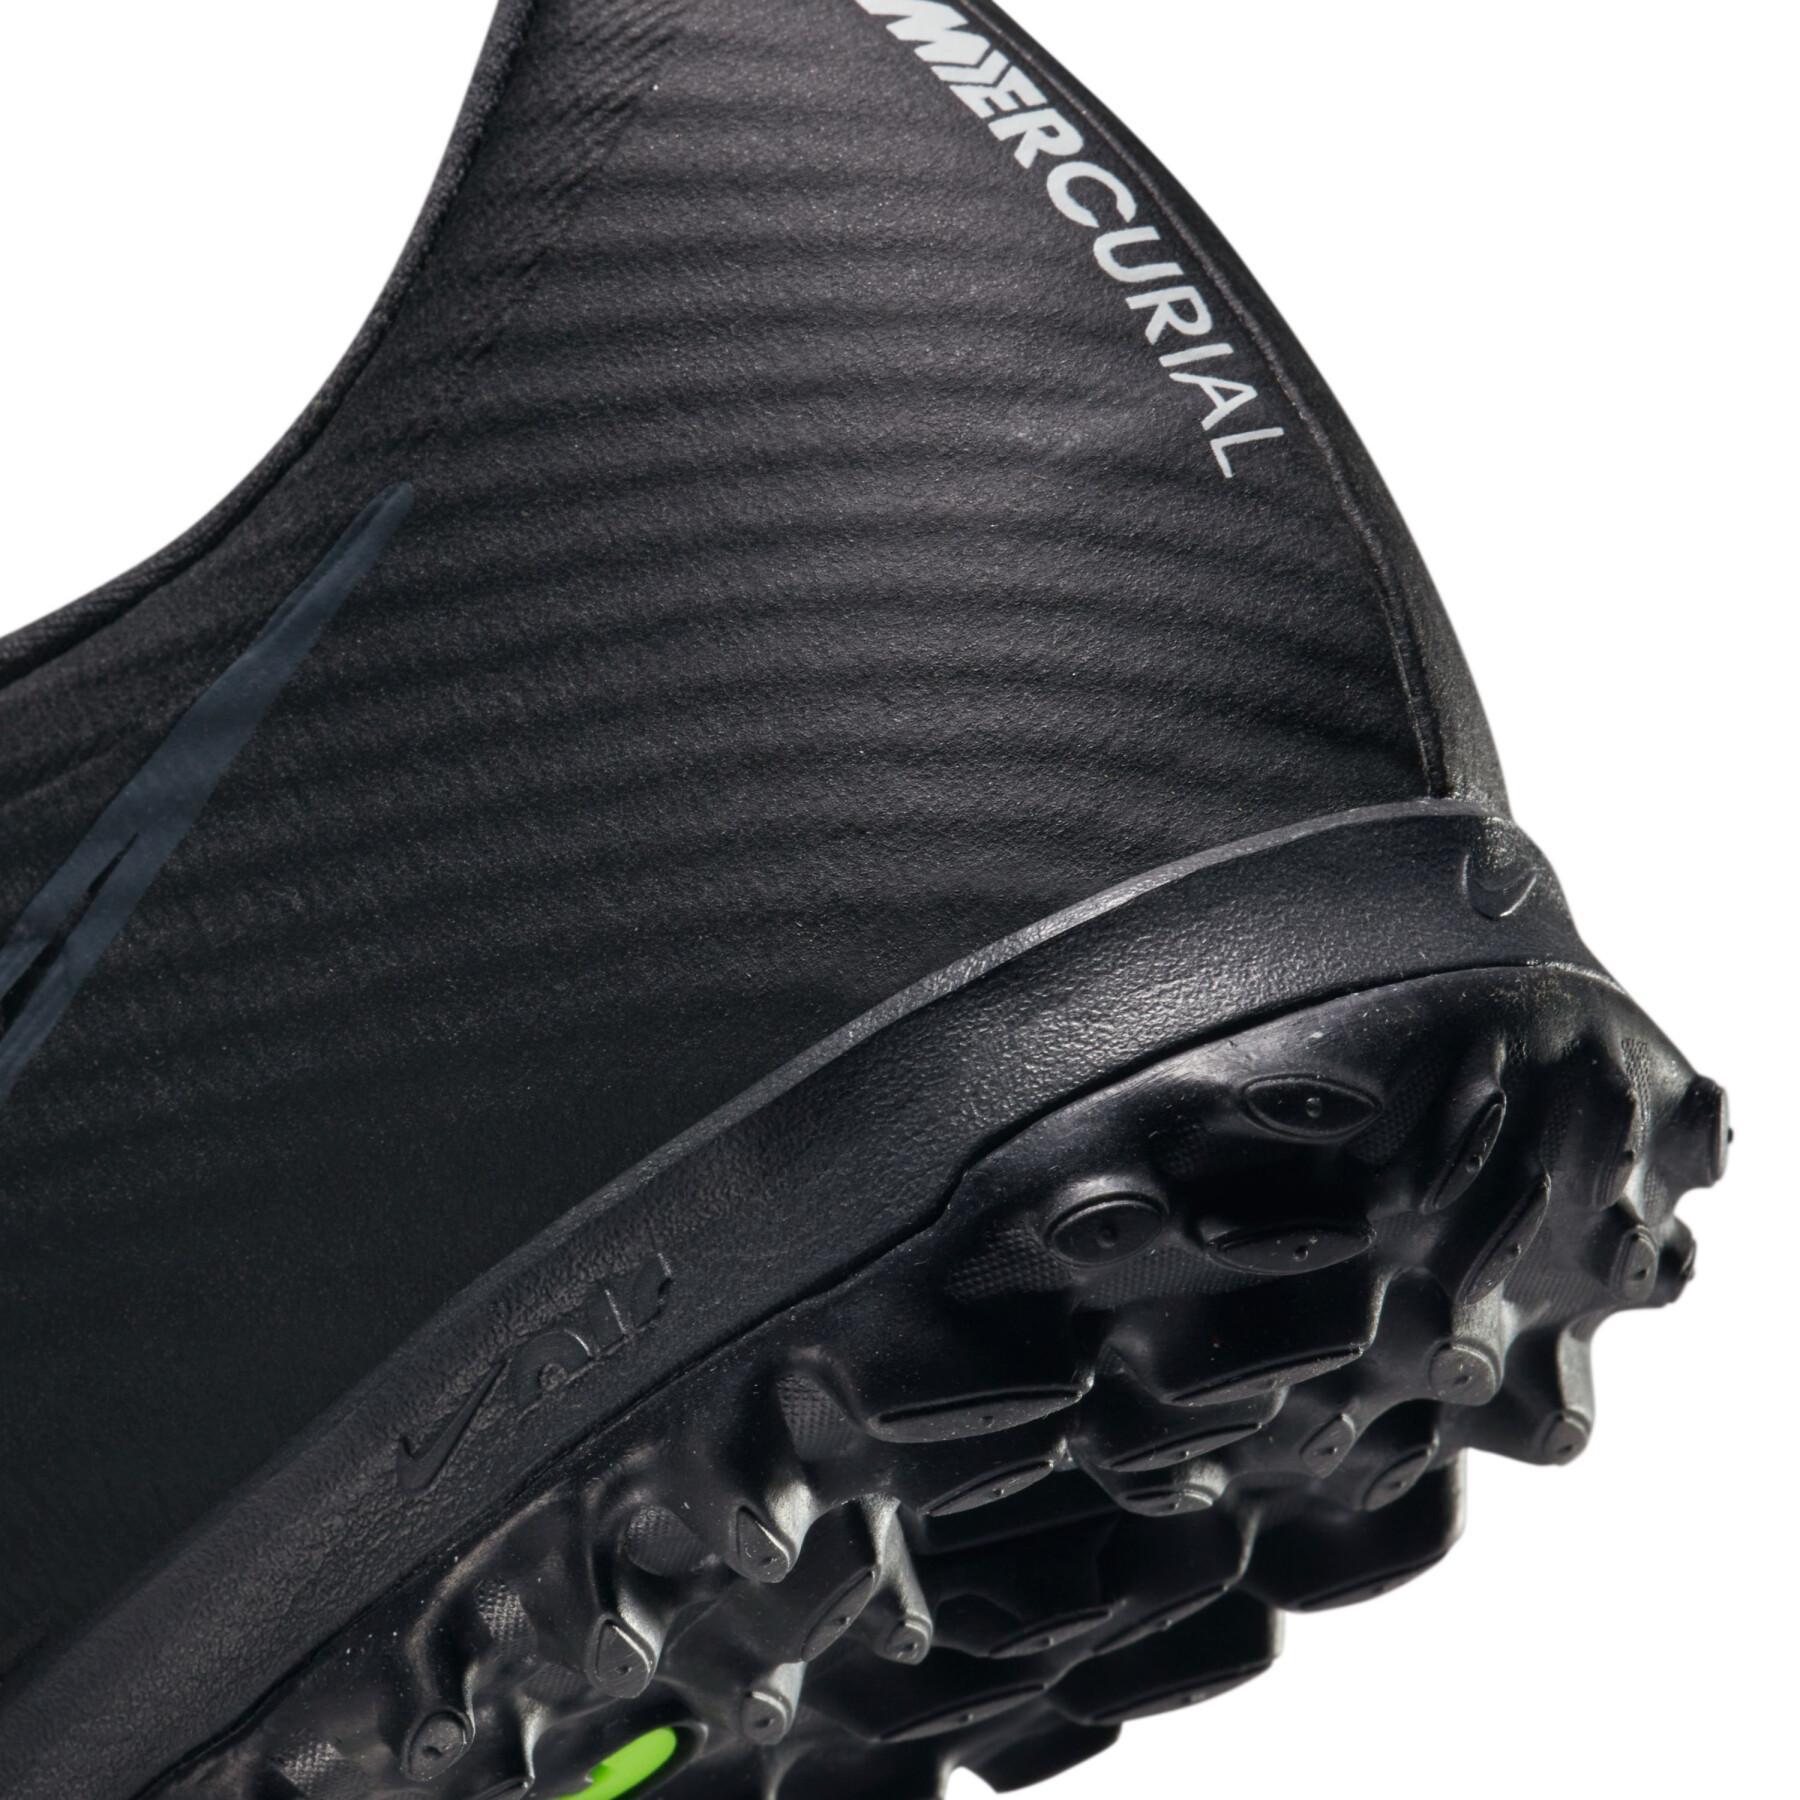 Scarpe da calcio Nike Zoom Mercurial Vapor 15 Academy TF - Shadow Black Pack